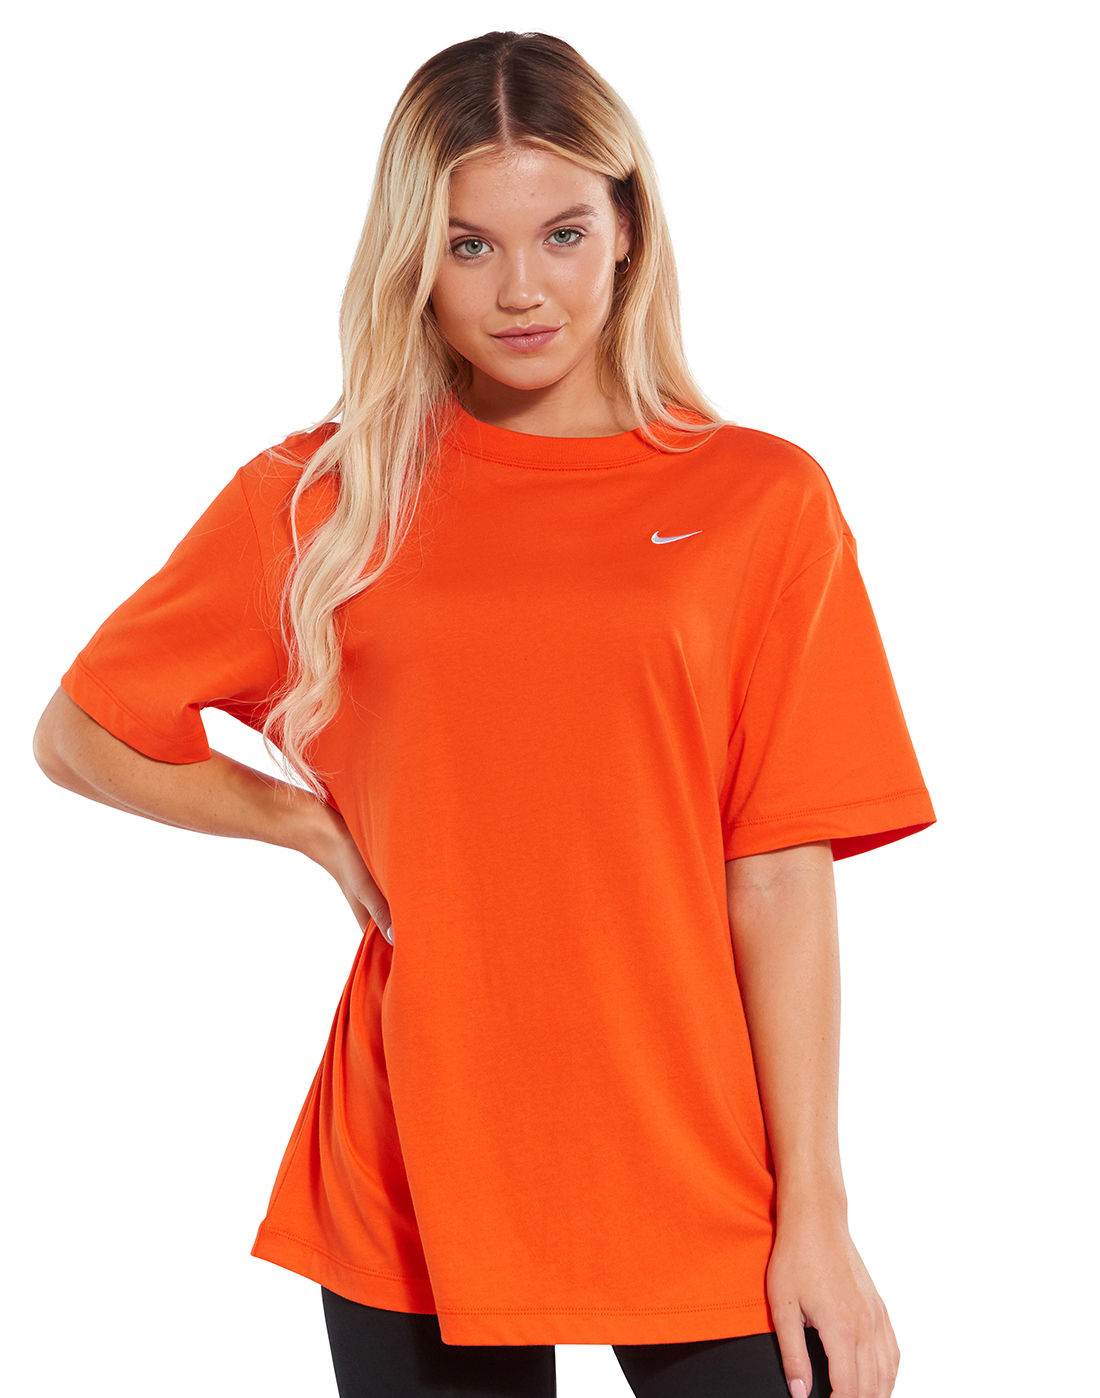 Nike Womens Oversized T-Shirt - Orange | Life Style Sports EU